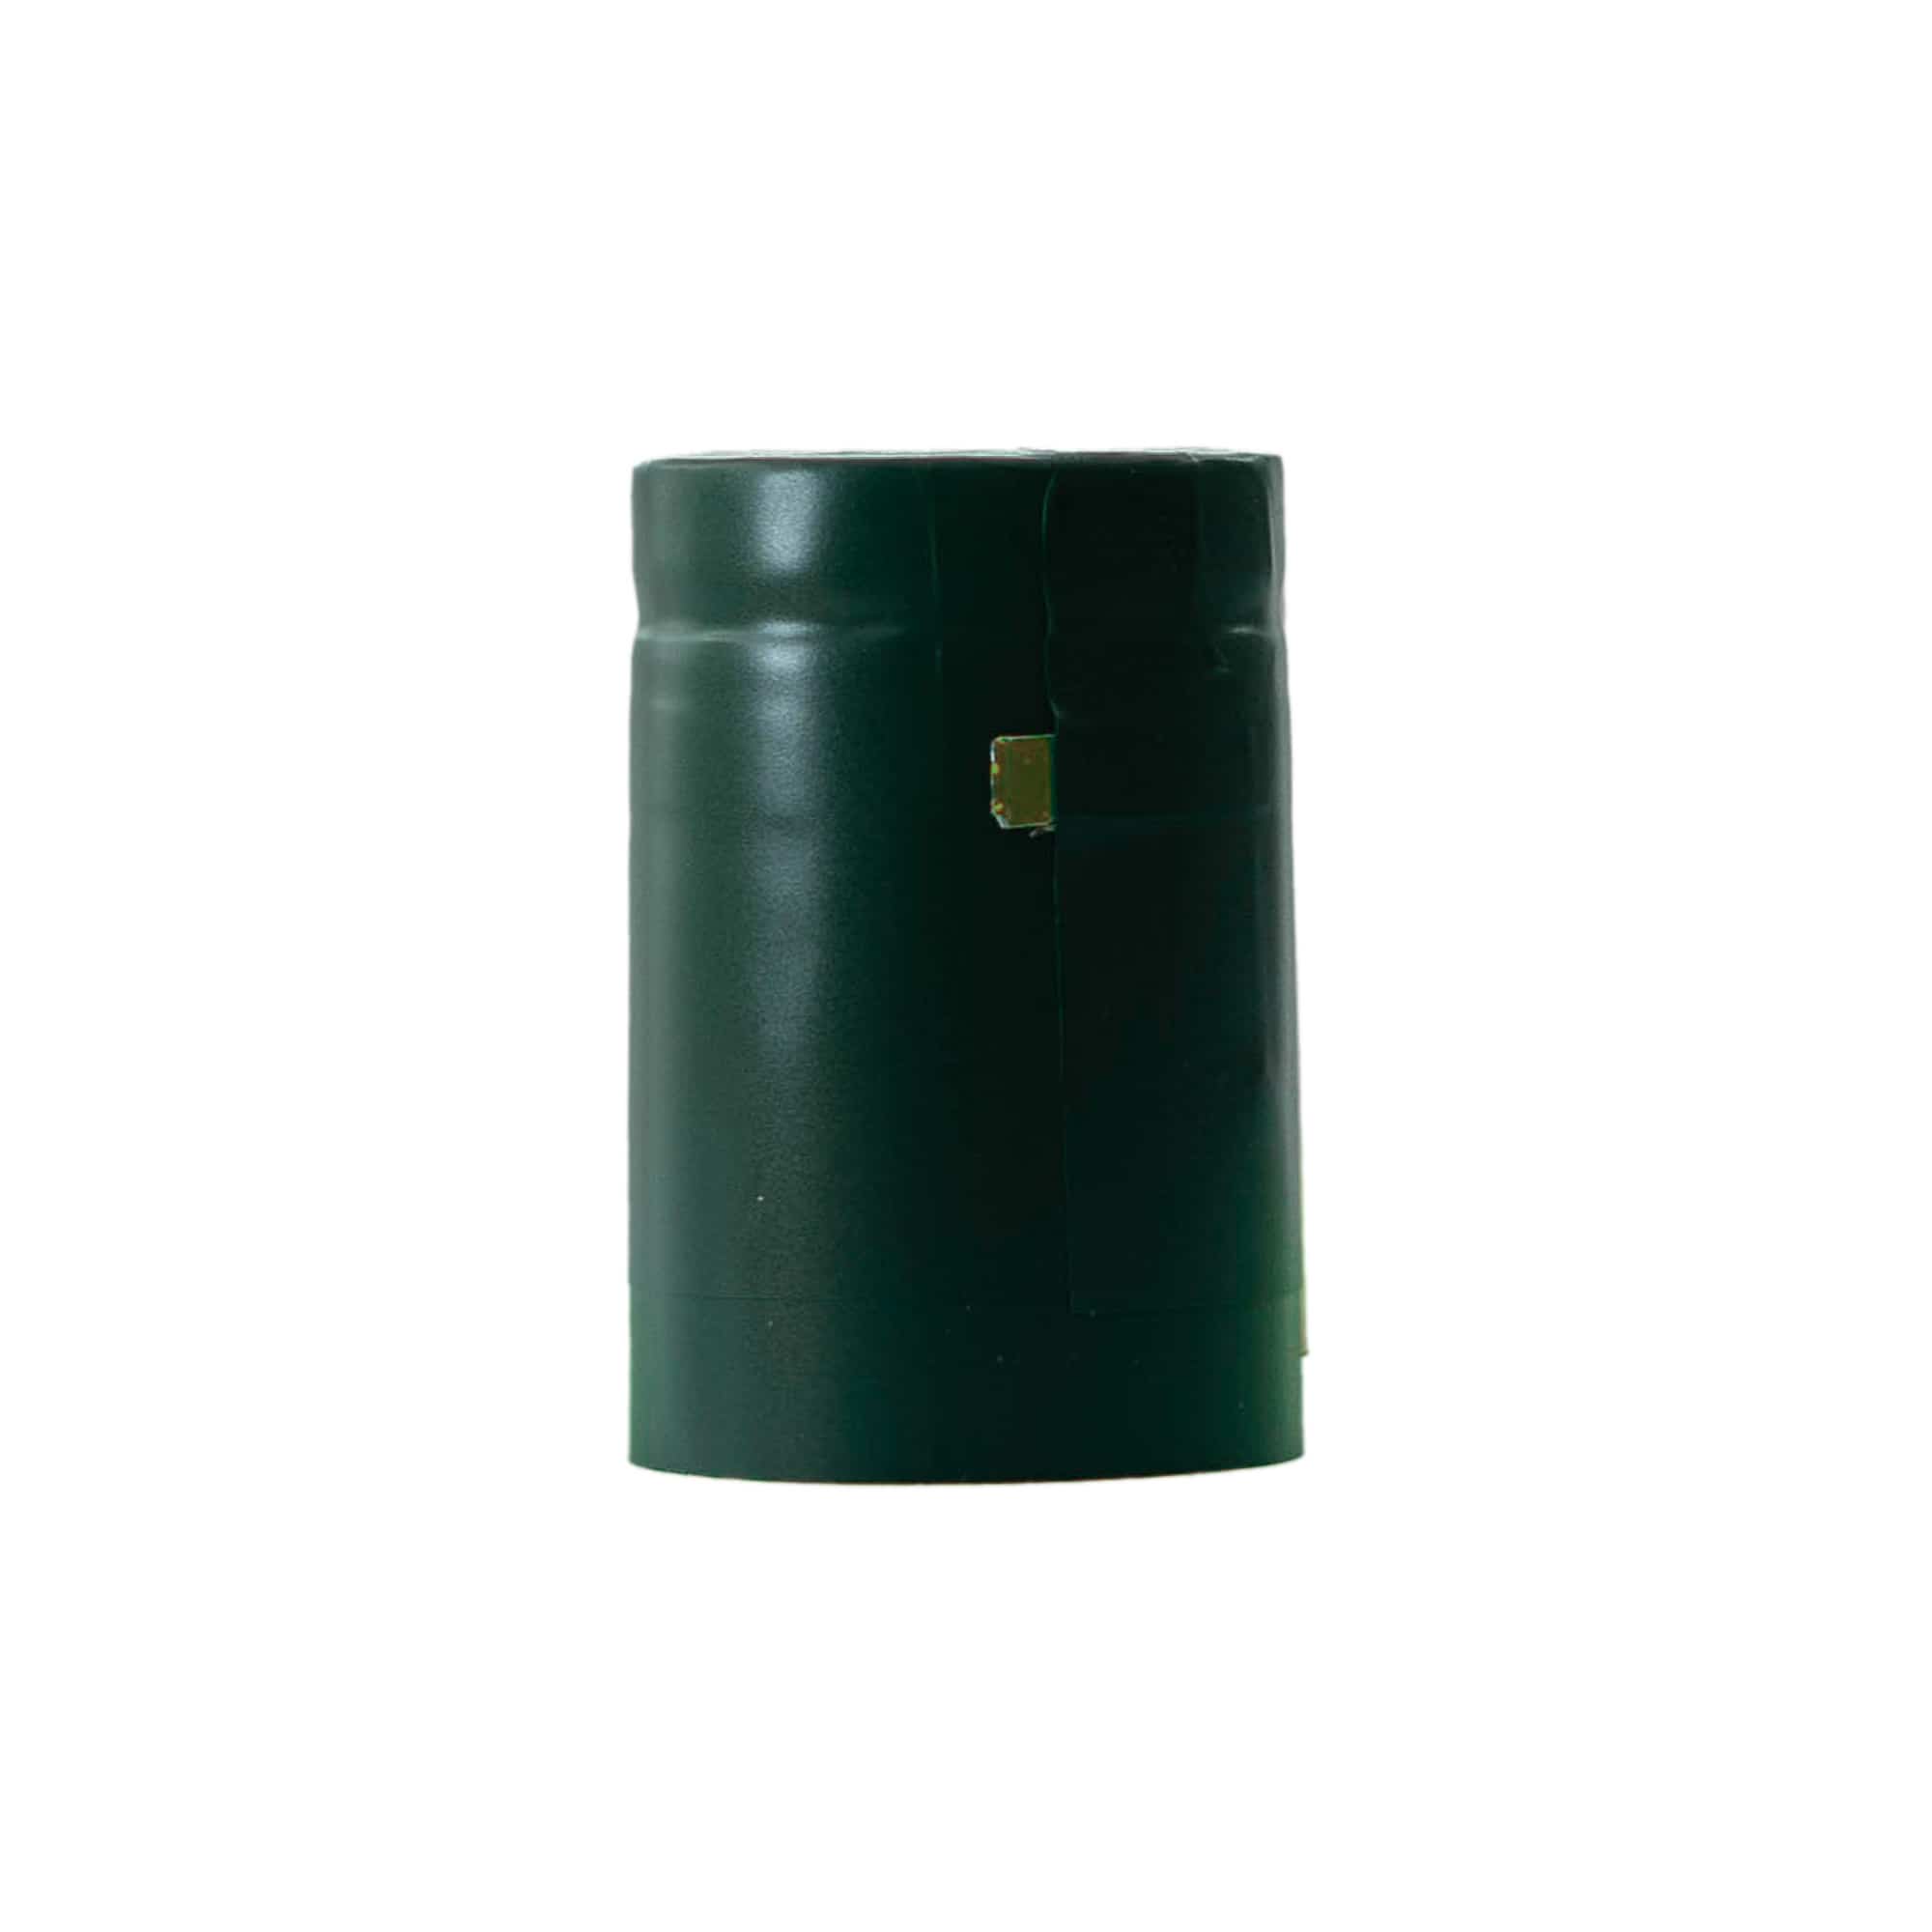 Schrumpfkapsel 32x41, PVC-Kunststoff, smaragadgrün